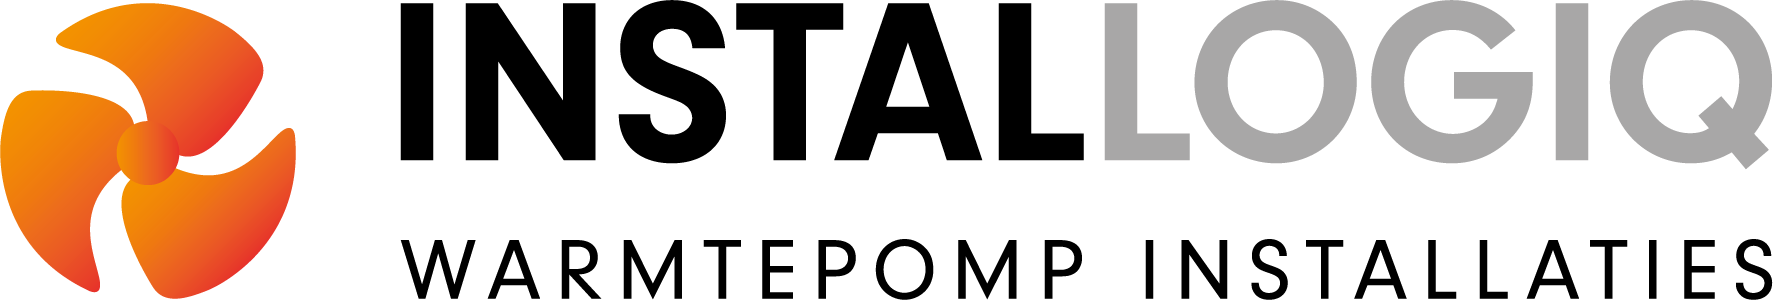 Installogiq logo